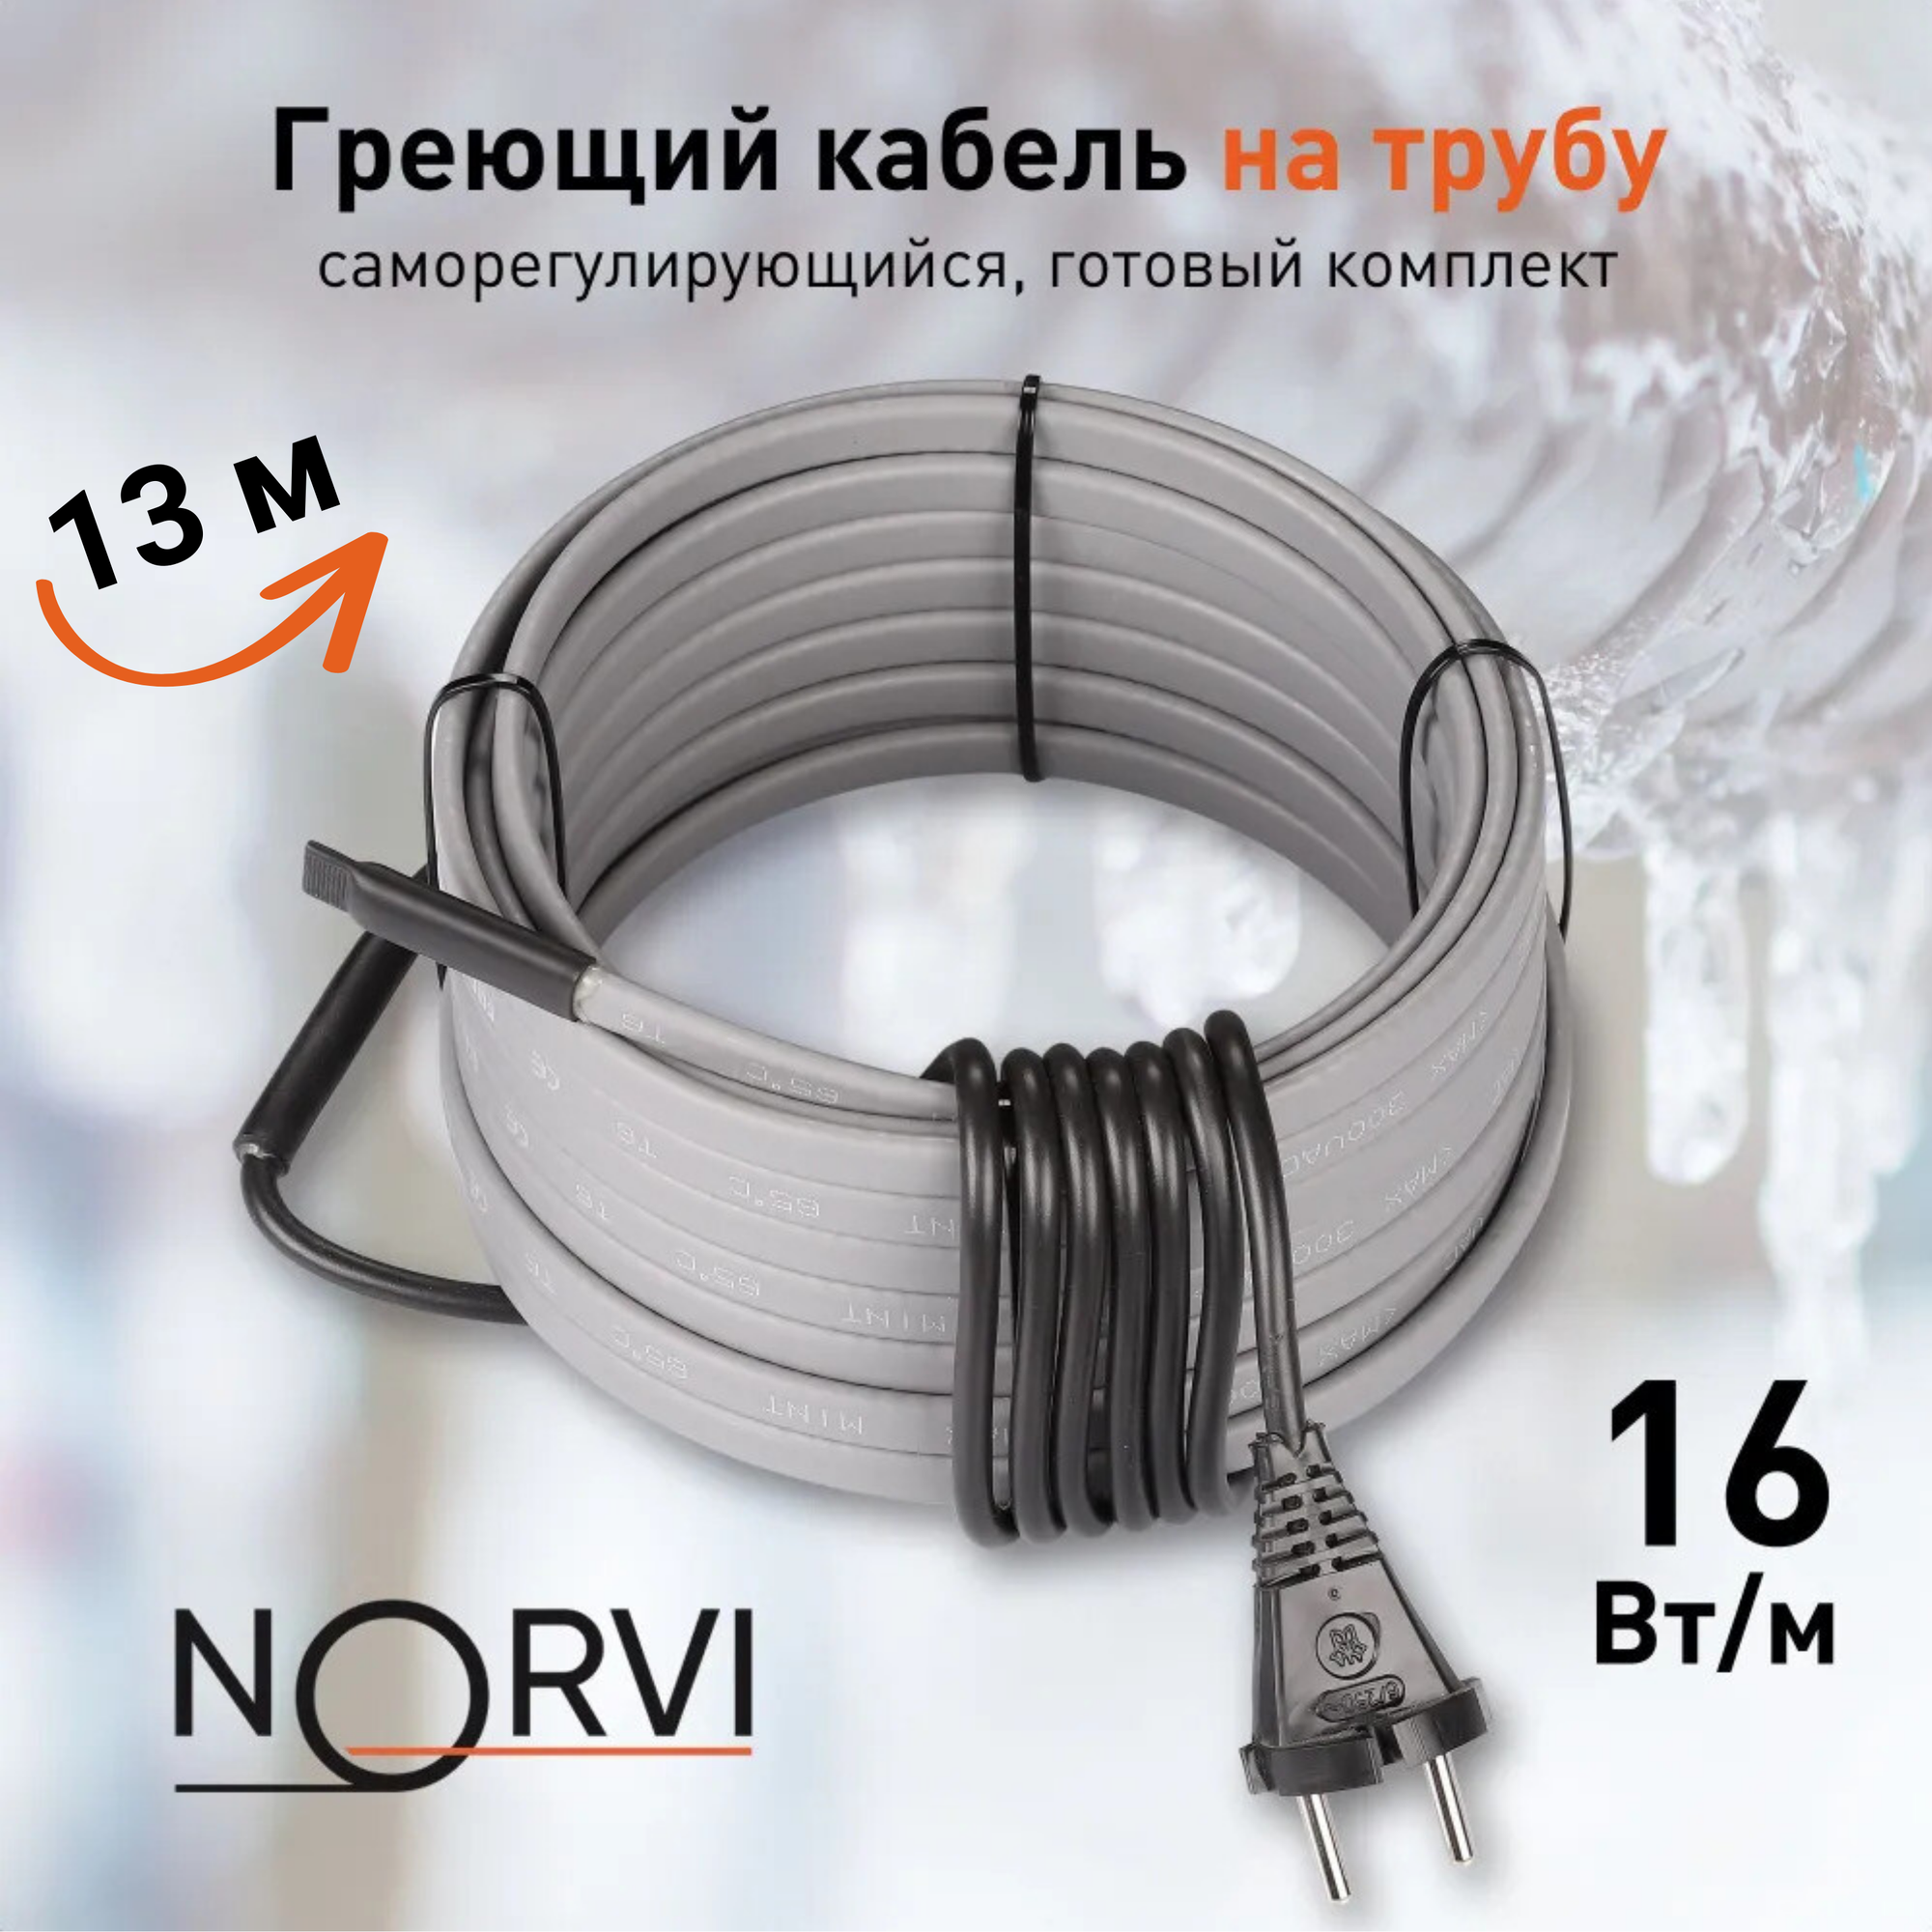 Греющий кабель NORVI ONPIPE, 208 Вт, 13 м, для обогрева труб снаружи